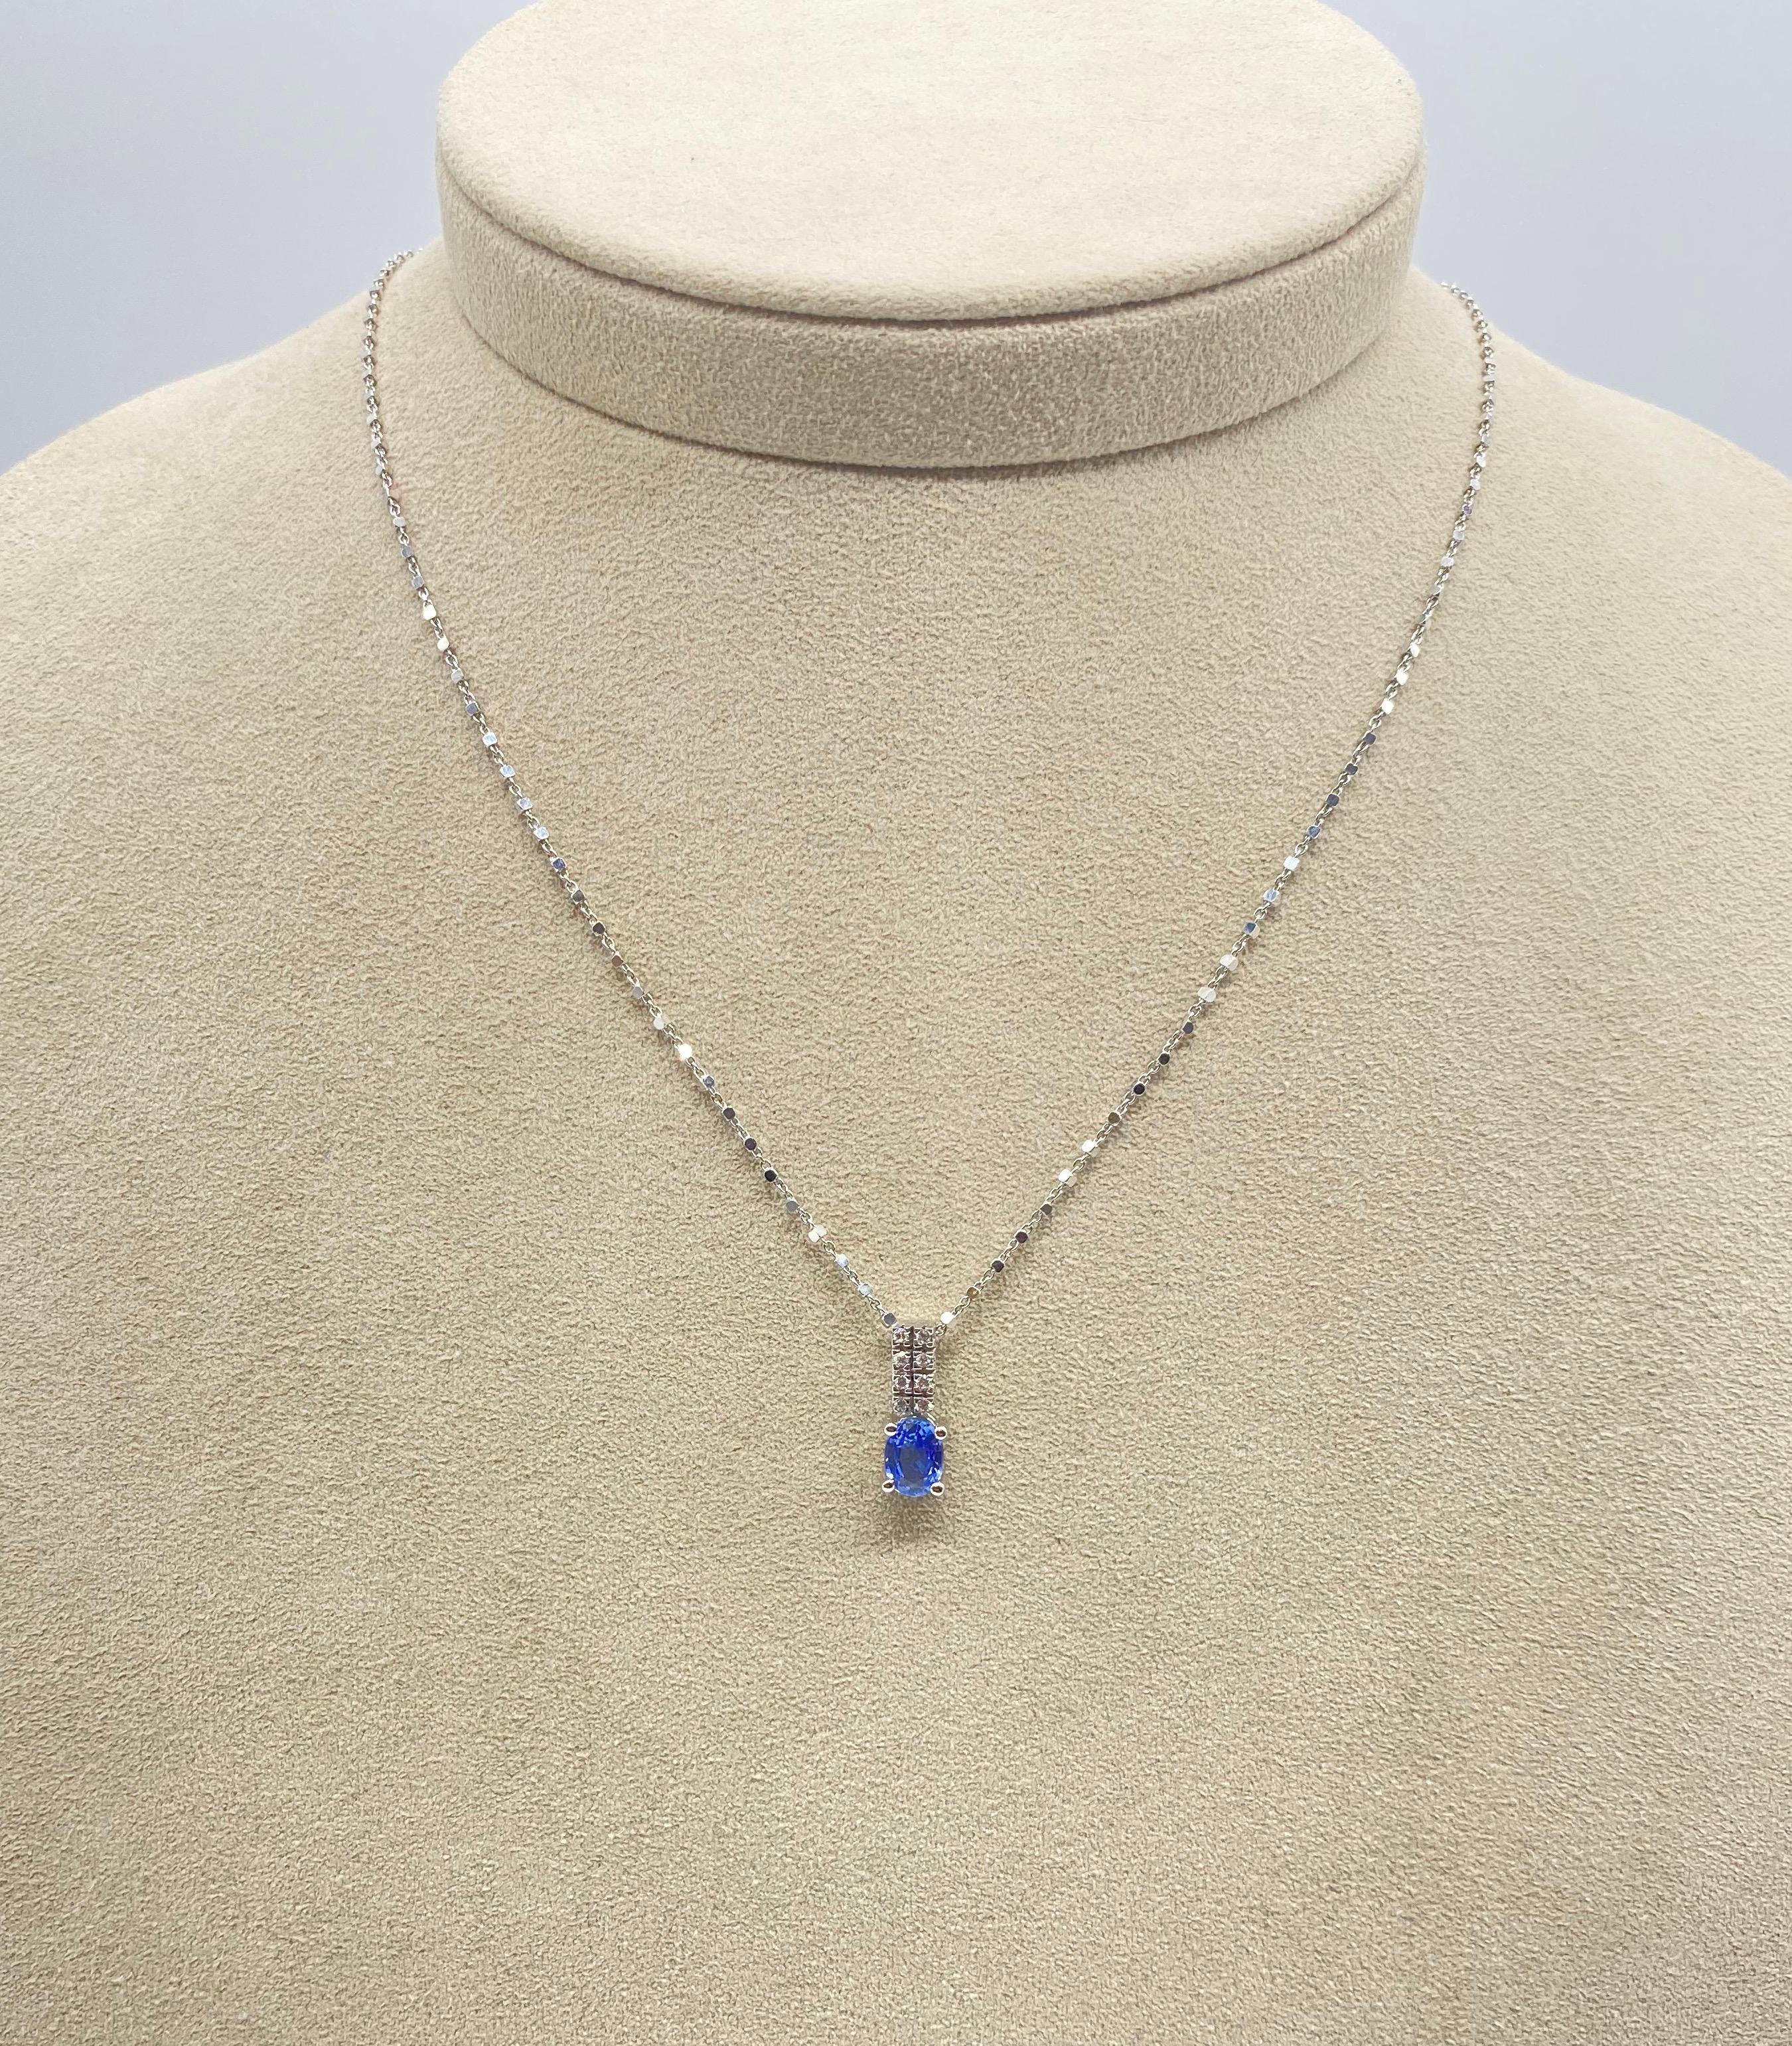 Entdecken Sie dieses wunderbare Collier aus 18-karätigem Weiß, das mit funkelnden Diamanten und einem ovalen blauen Saphir verziert ist und eine perfekte Kombination aus Schönheit und Eleganz bietet. Das Collier ist mit einem originellen Mailing